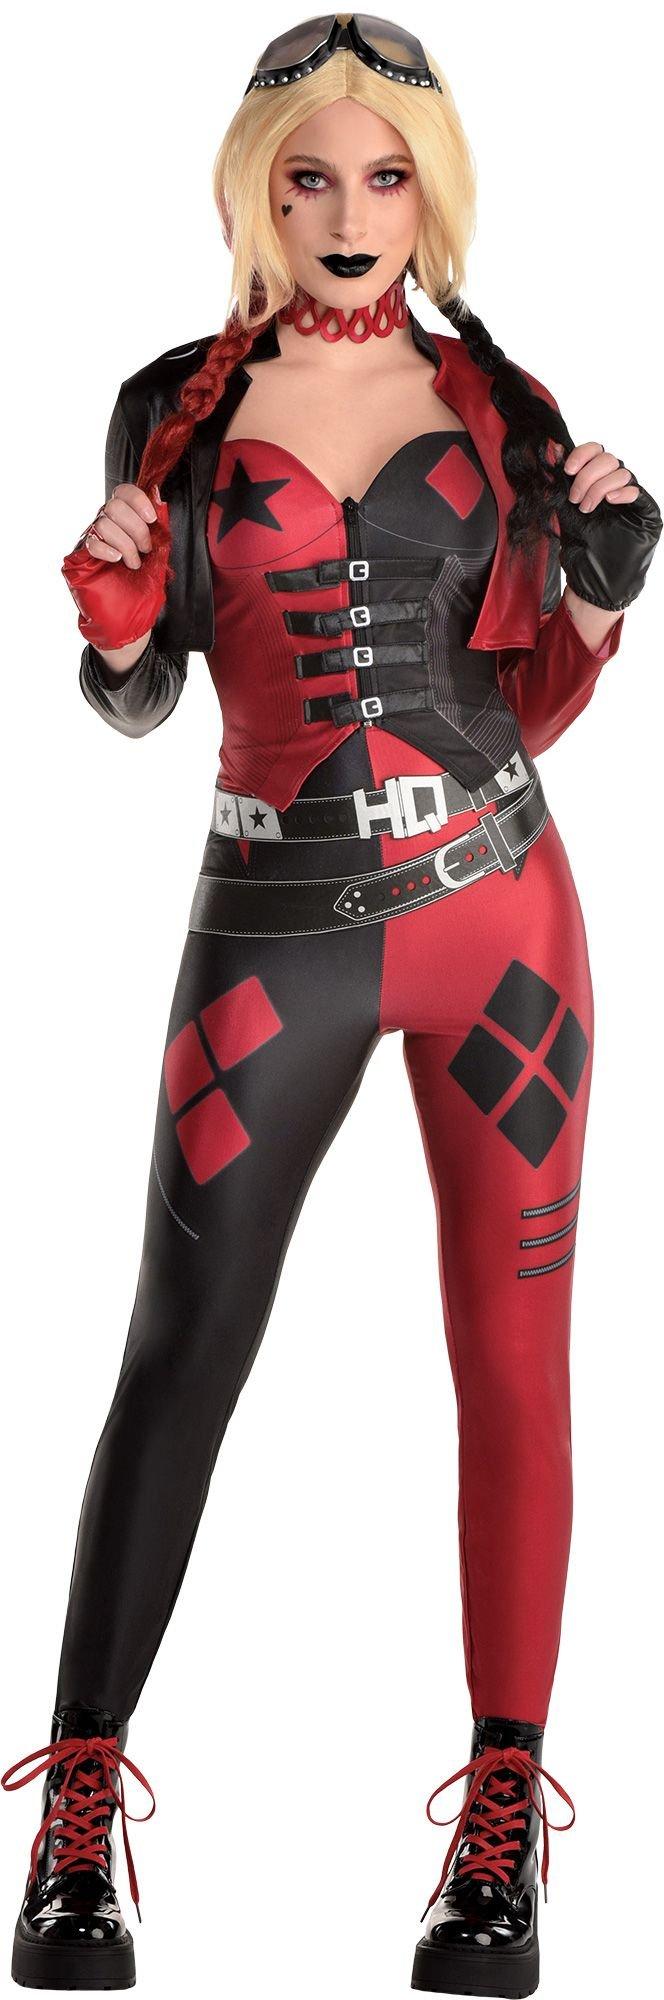 Harley Quinn Suicide Squad Costume Outlet 100 Save 52 Jlcatjgobmx